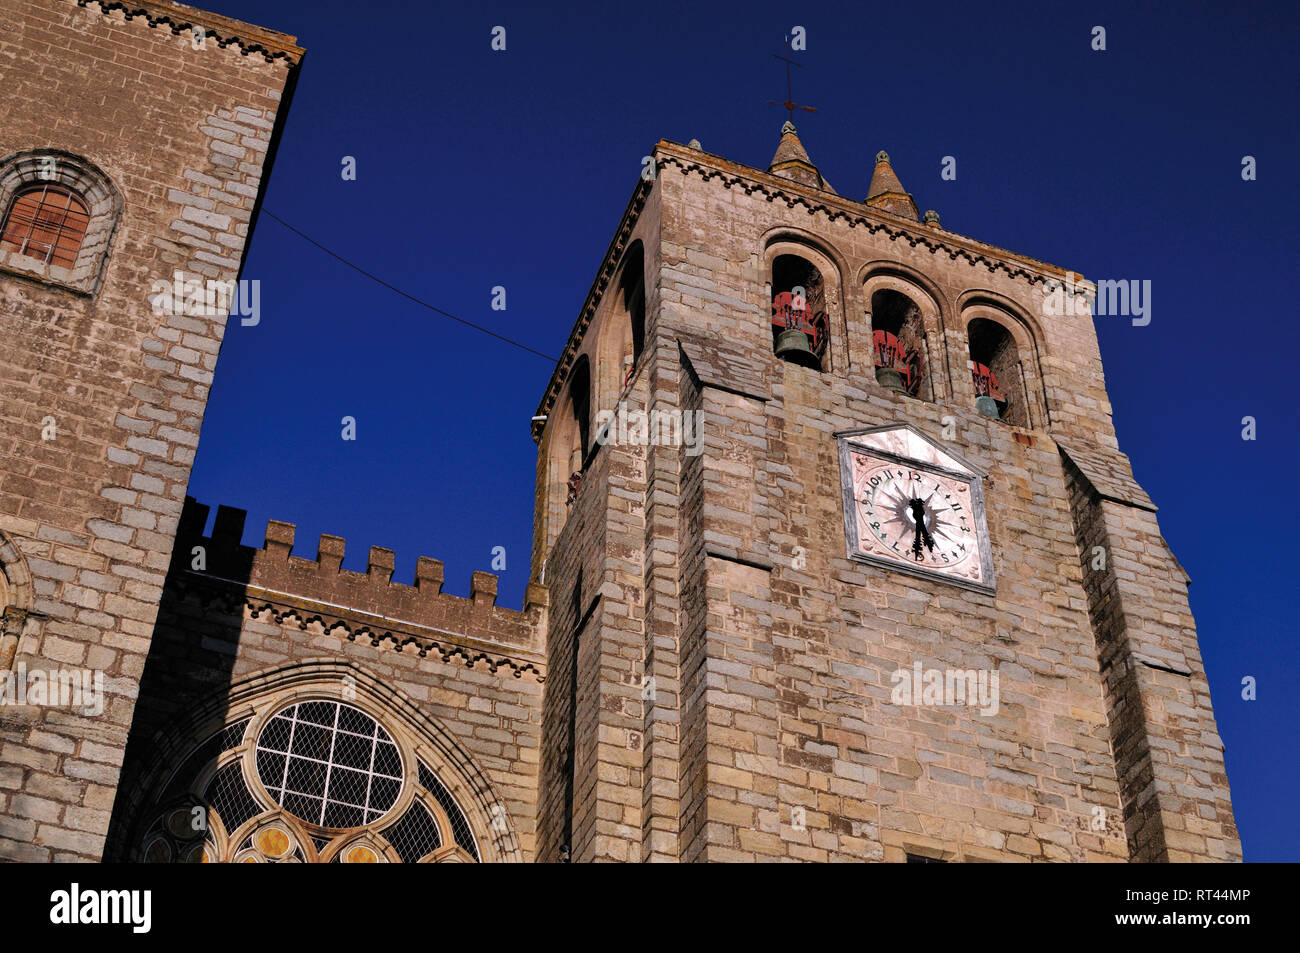 Abajo a arriba vista del campanario y la fachada de la catedral medieval Foto de stock